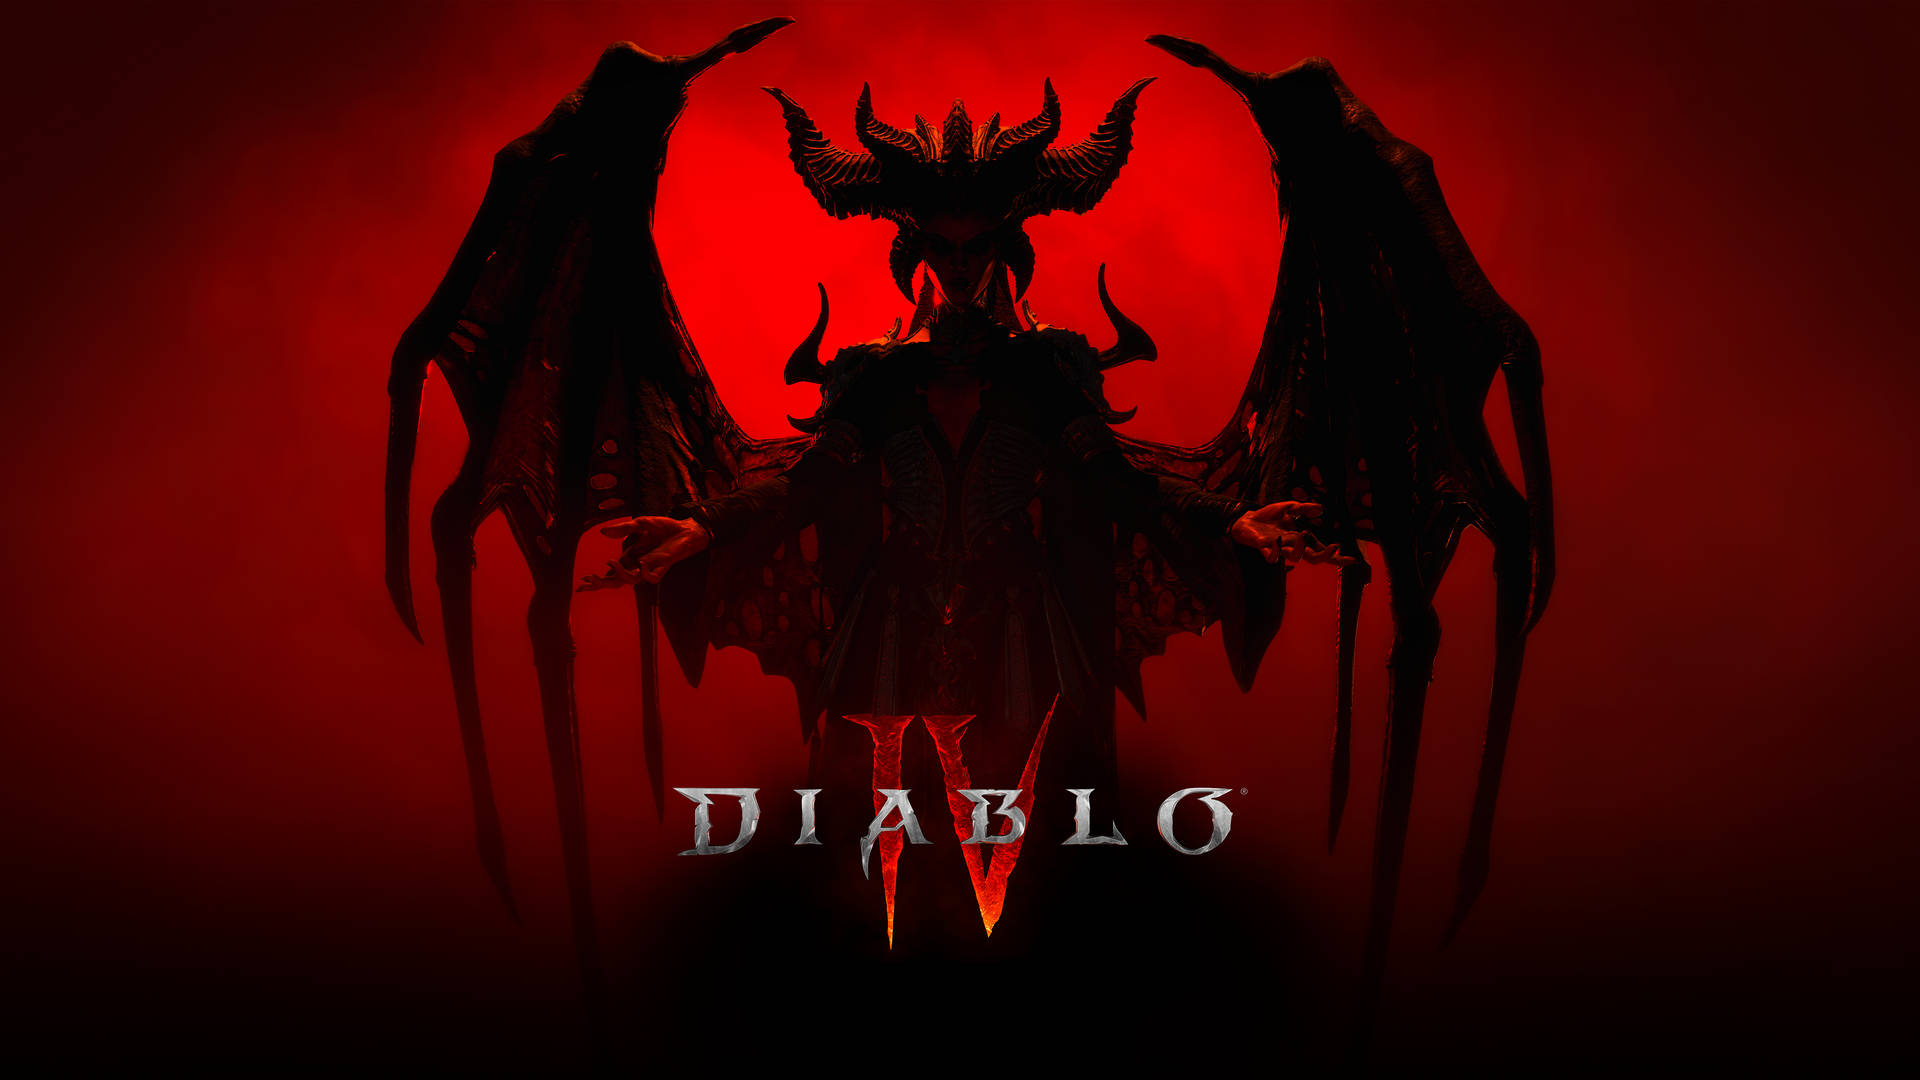 Onde Diablo IV Billede skaber mystisk stemning. Wallpaper